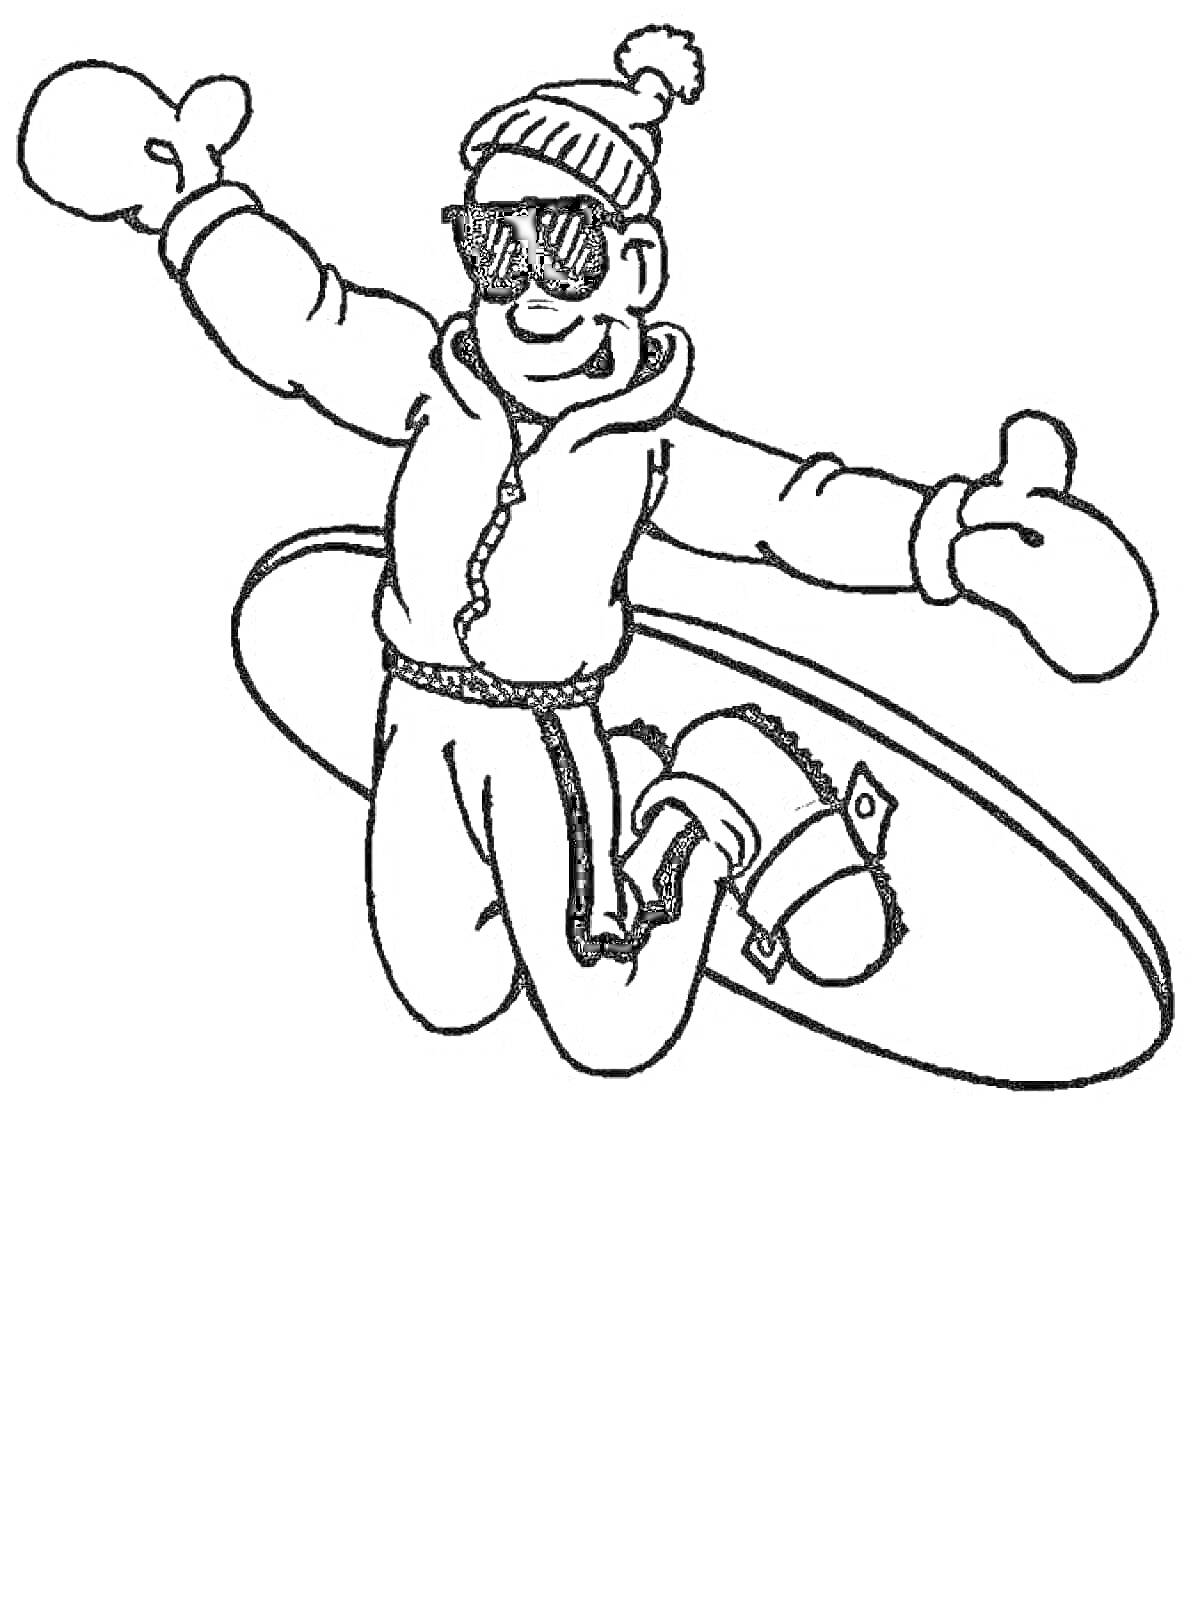 Раскраска мальчик на сноуборде в зимней одежде и солнечных очках, выполняющий трюк в воздухе